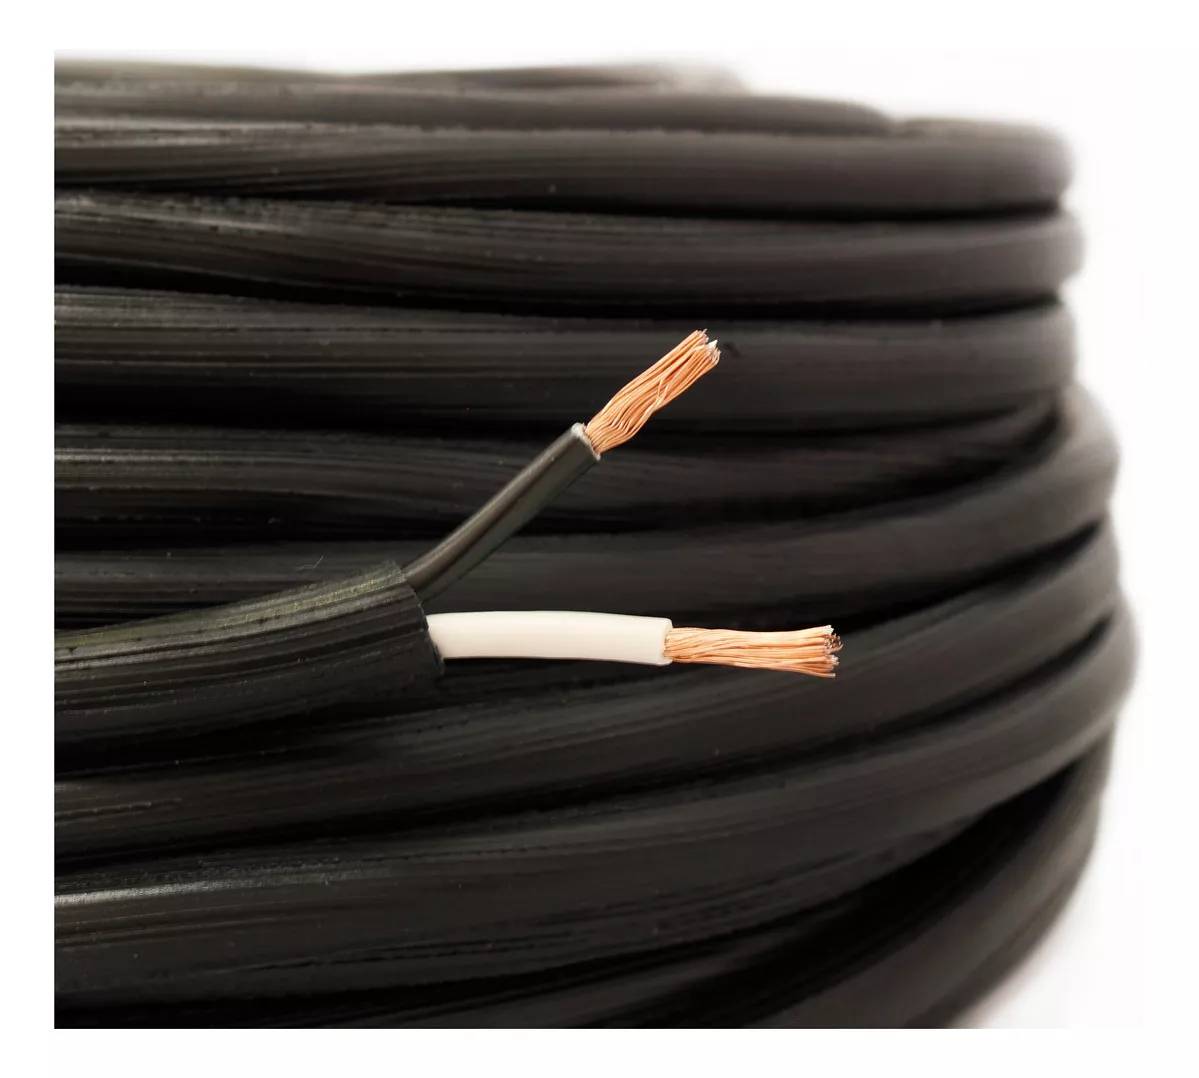 Segunda imagen para búsqueda de cable electrico numero 10 uso rudo